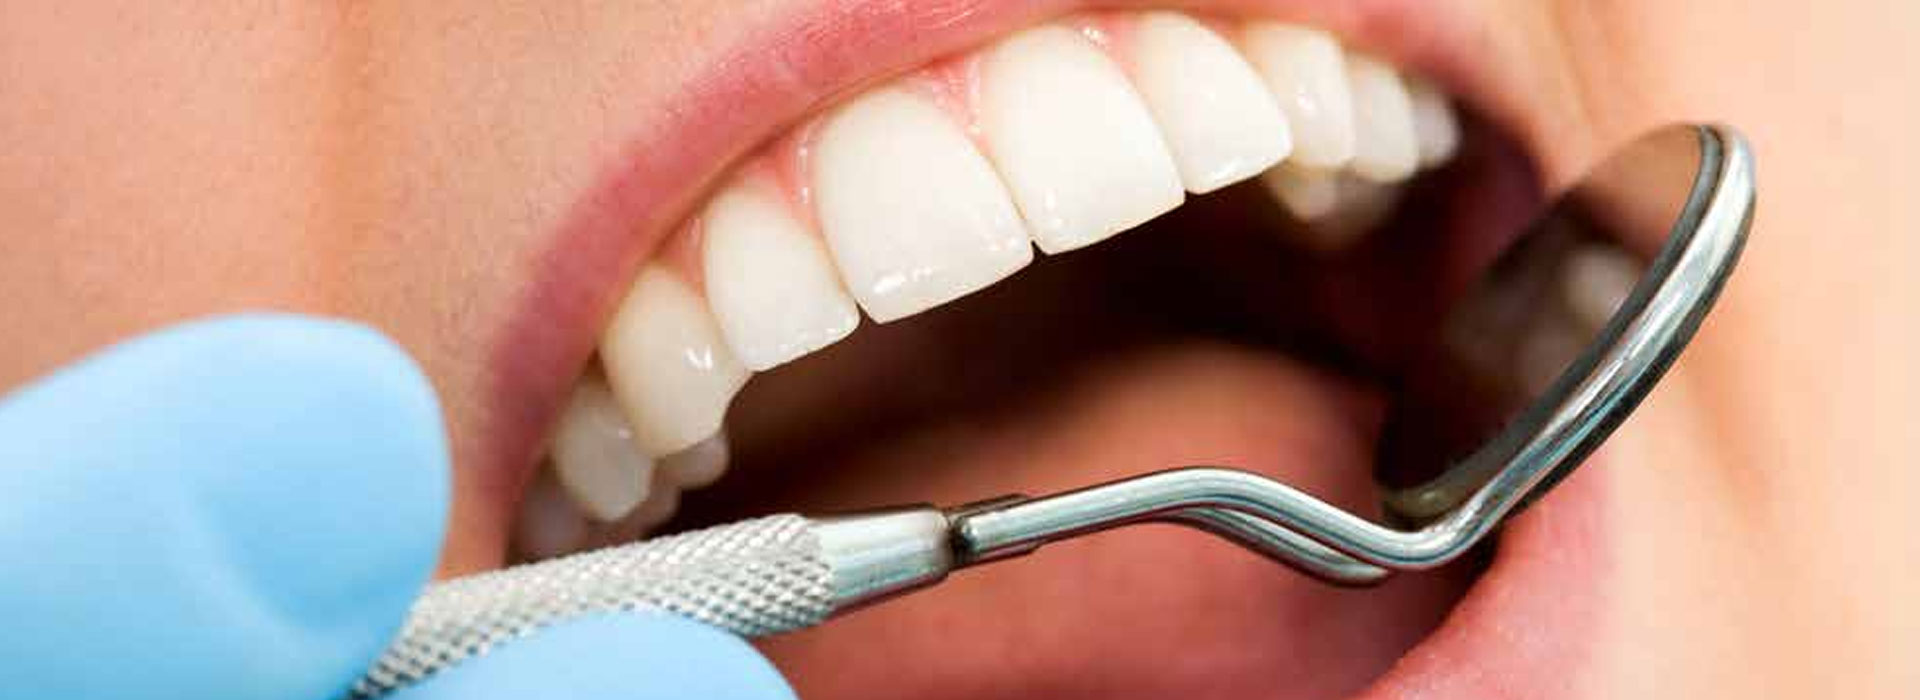 Tu salud dental es parte fundamental de tu bienestar general